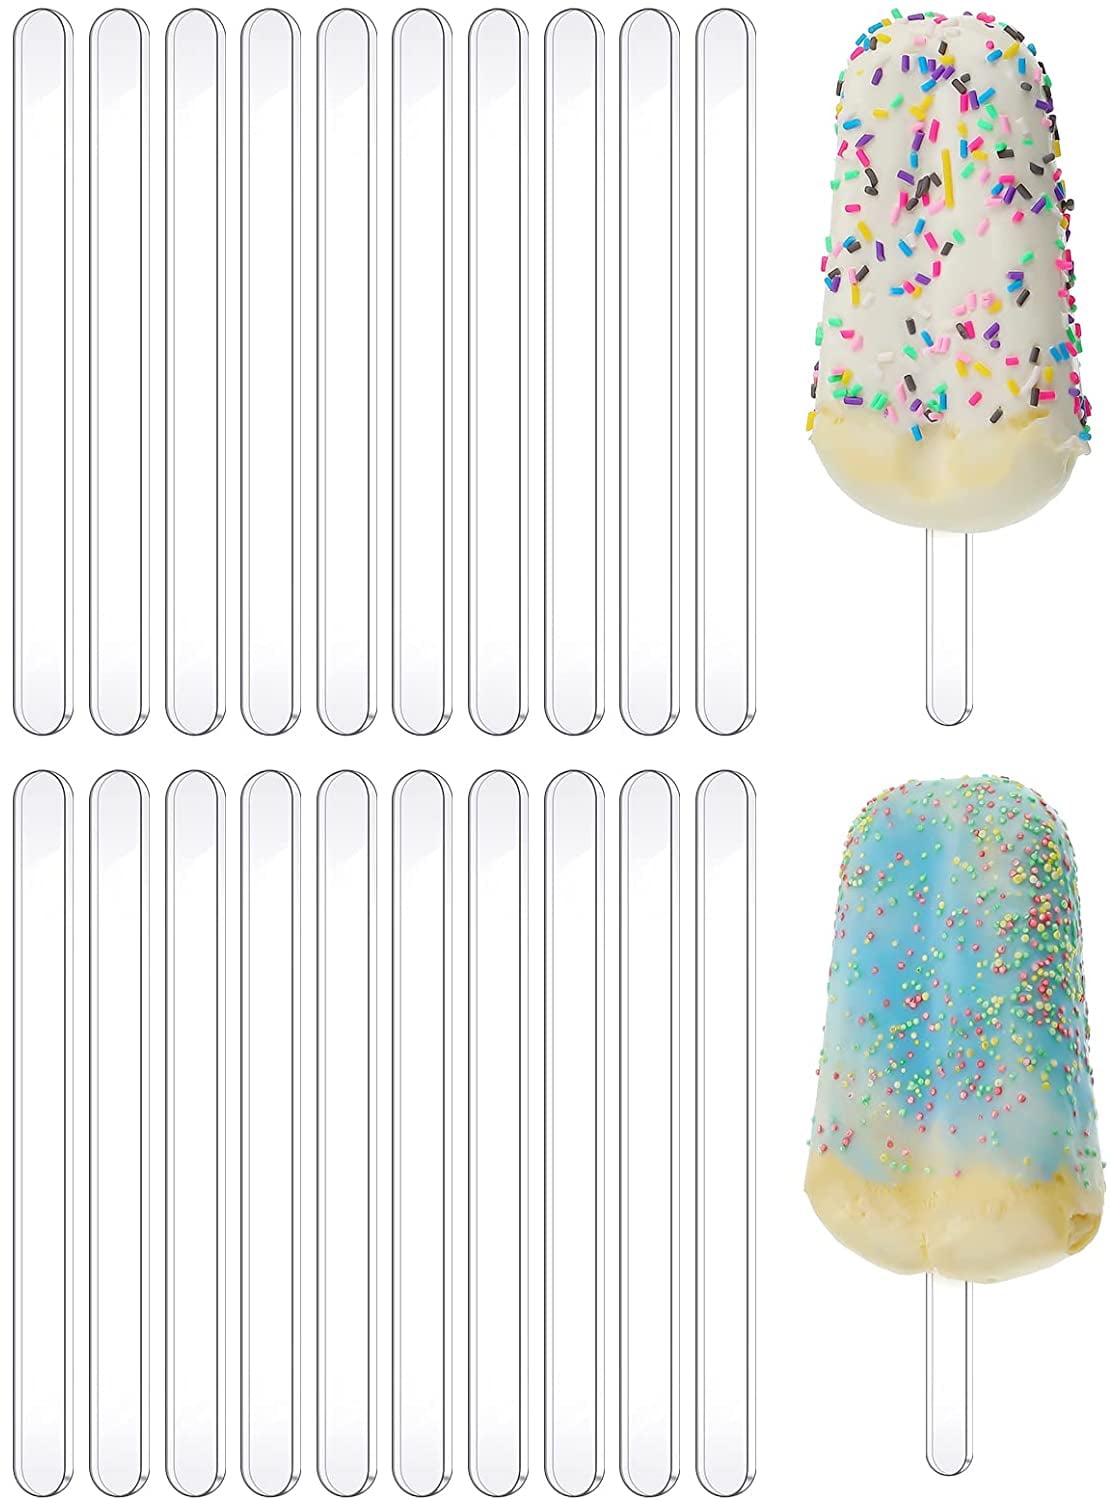 10pcs Reusable Colorful Acrylic Popsicle Sticks, Cake Sicle Sticks, Ice  Cream Sticks, Craft Sticks, Chocolate Lollipop Holder - Reusable DIY  Popsicle Stick With Fun Designs